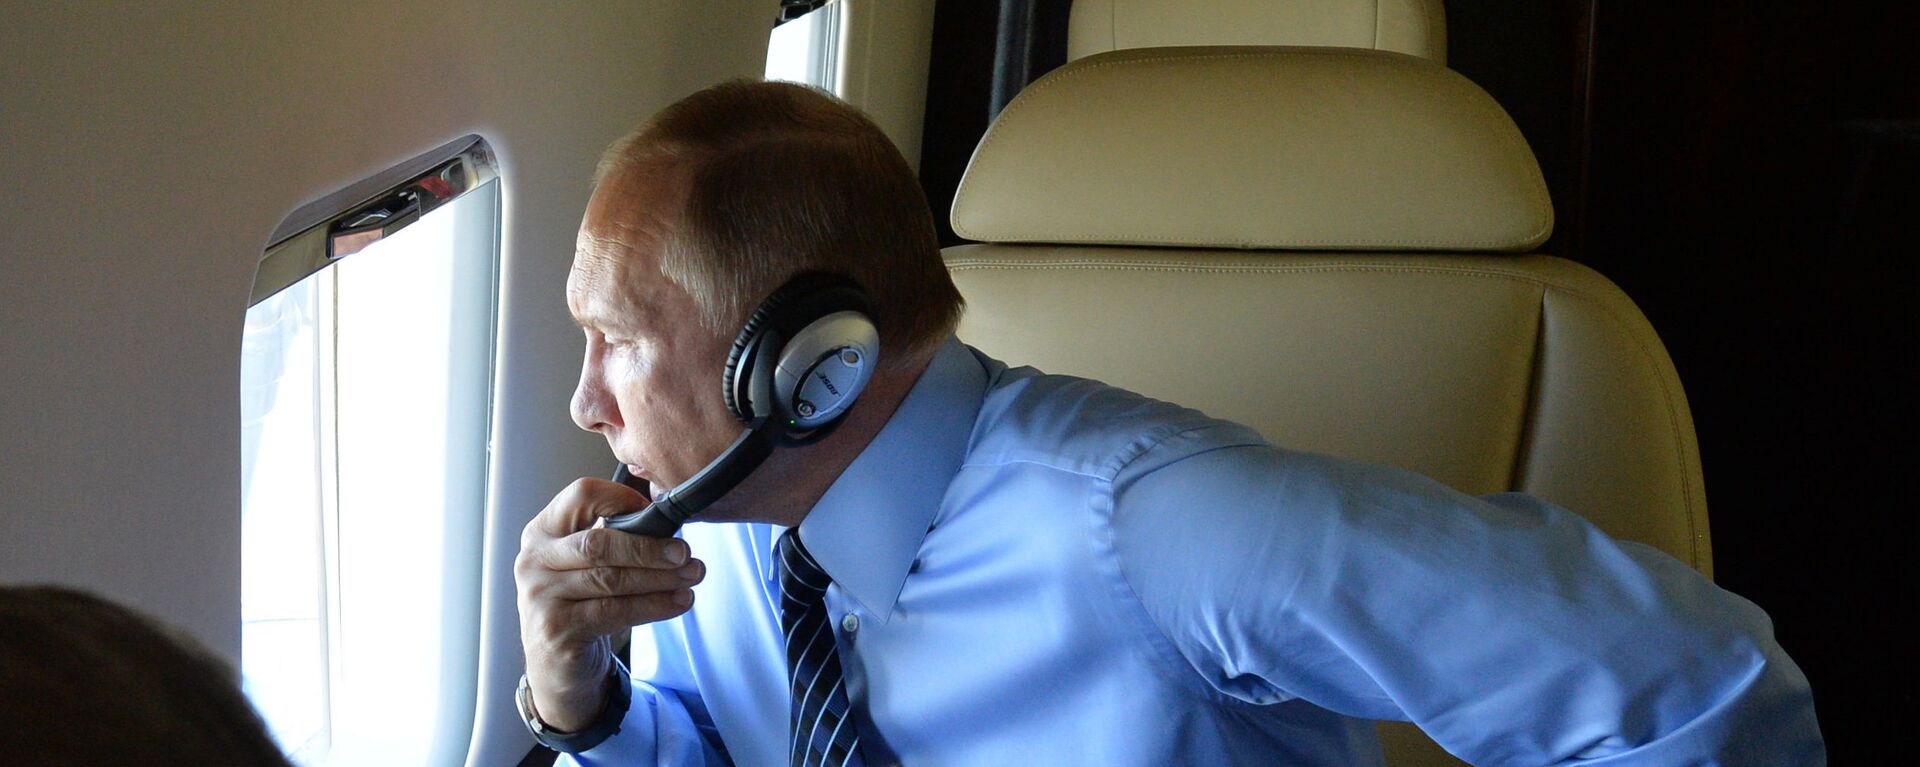 Predsednik Rusije Vladimir Putin u avionu - Sputnik Srbija, 1920, 18.11.2018